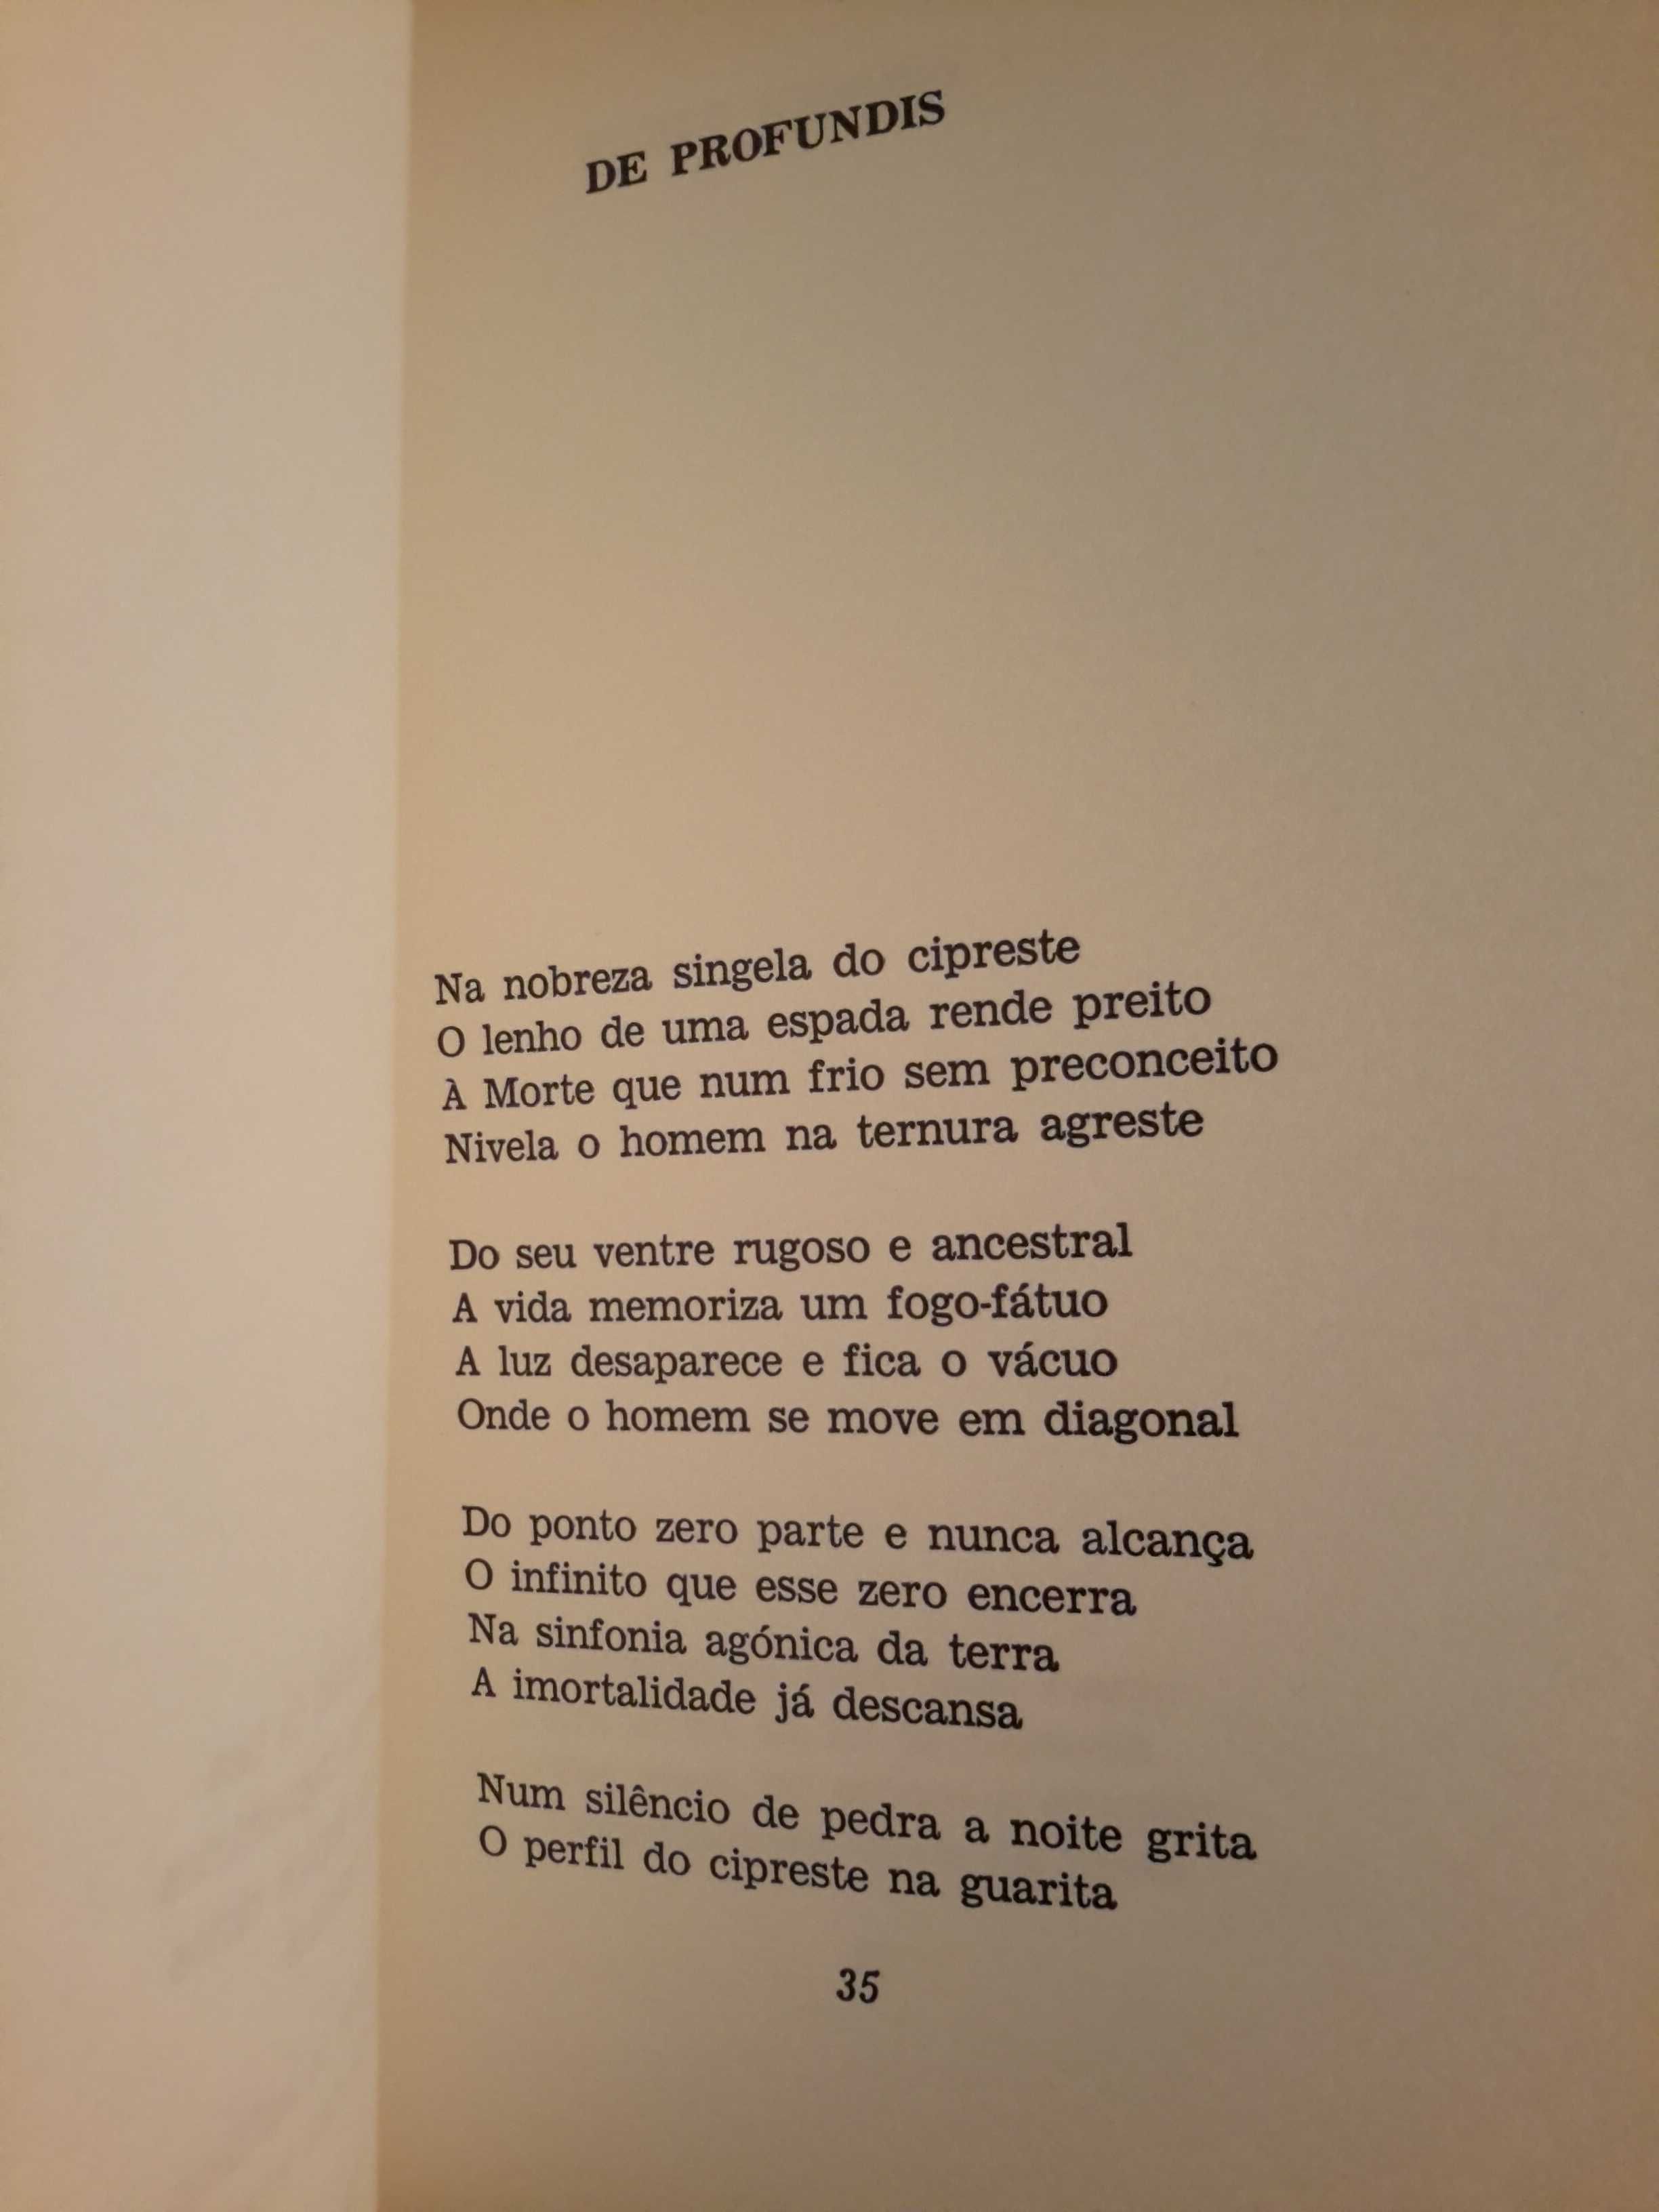 Cândido José de Campos - Preciso de Linho Novo (autografado)